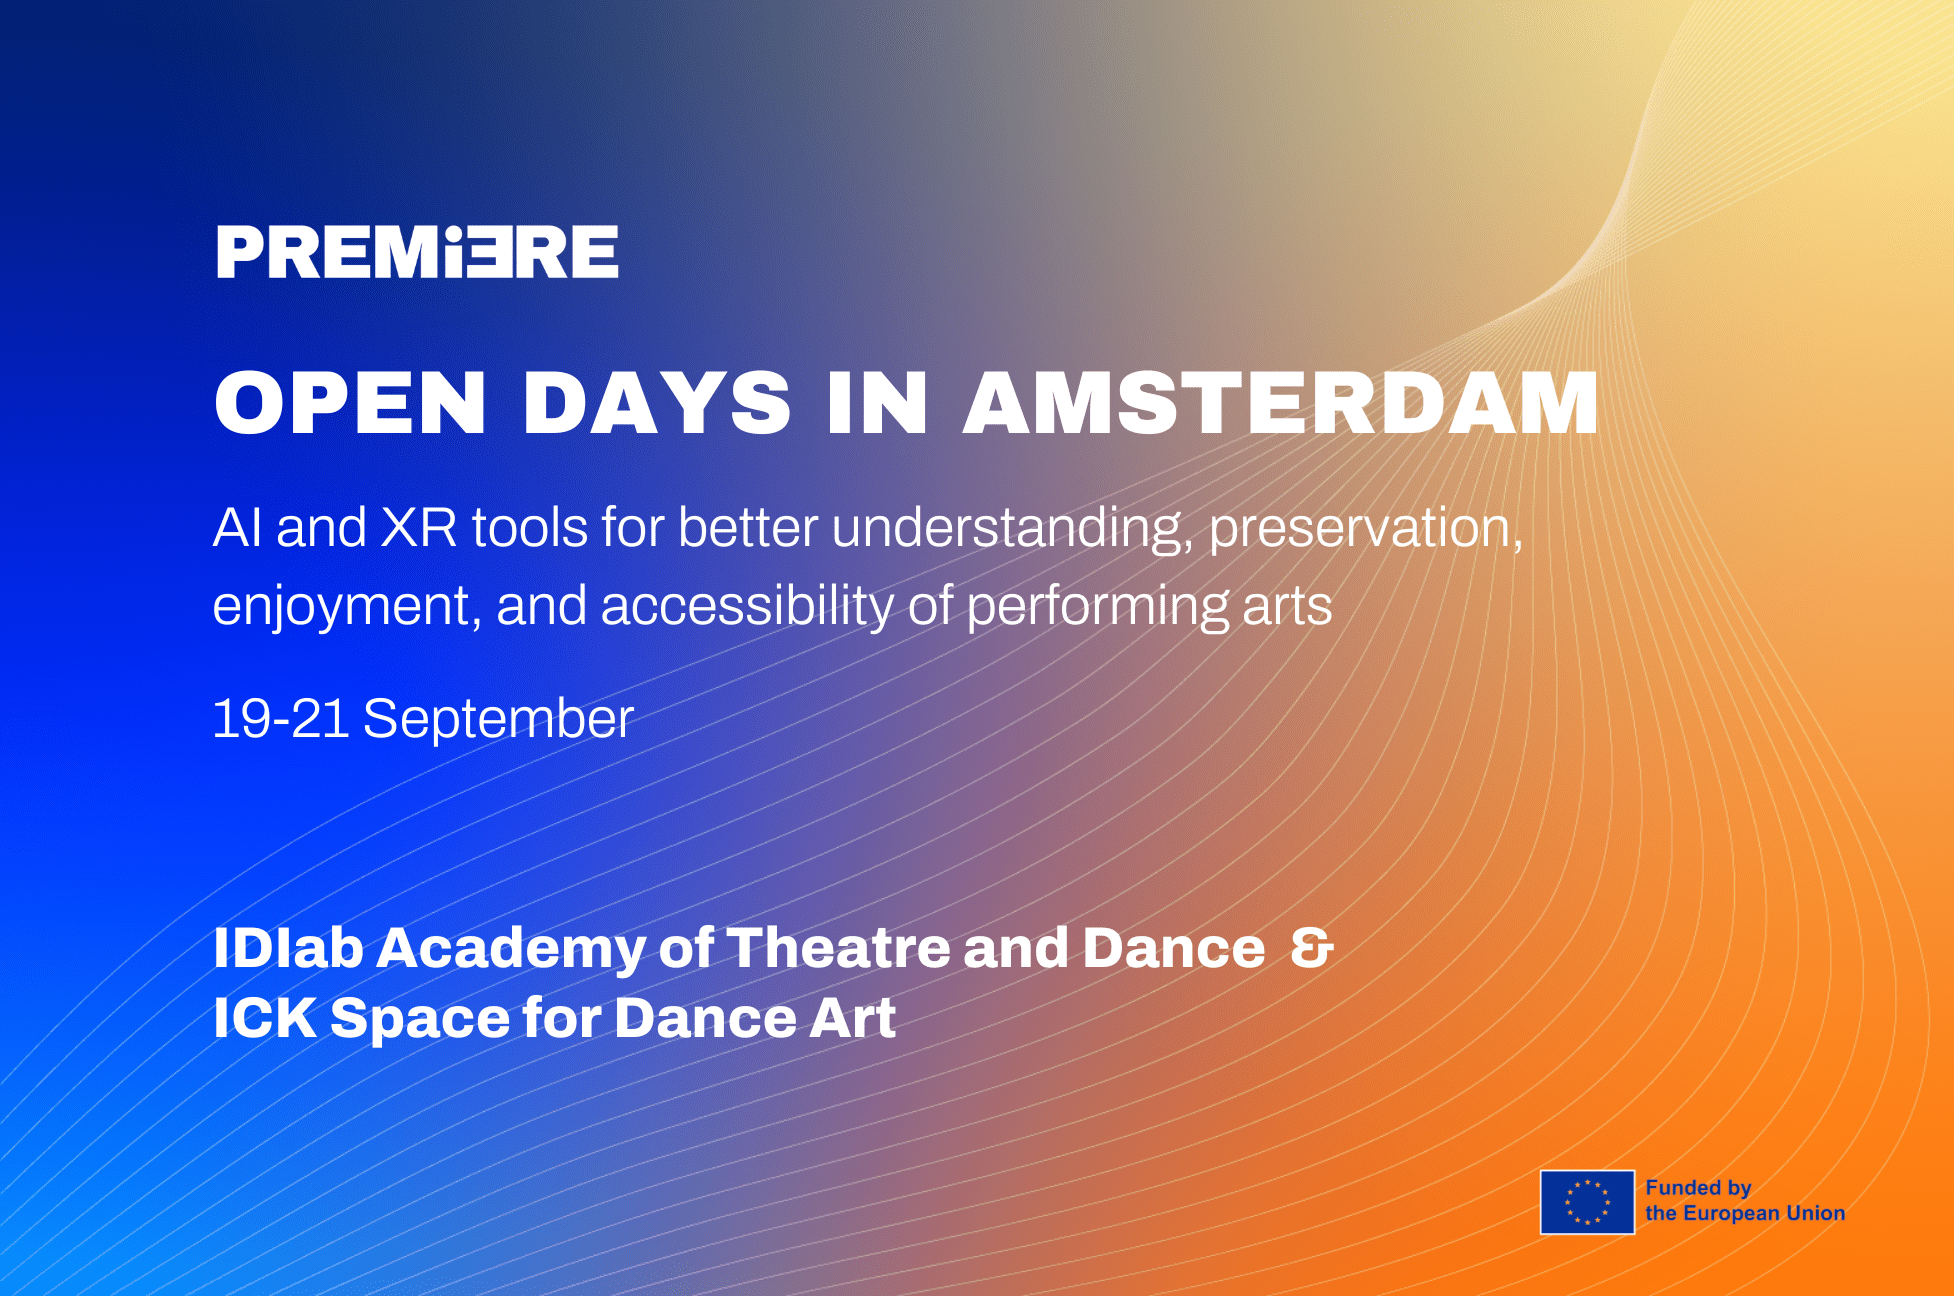 Open Days in Amsterdam, 19-21 September